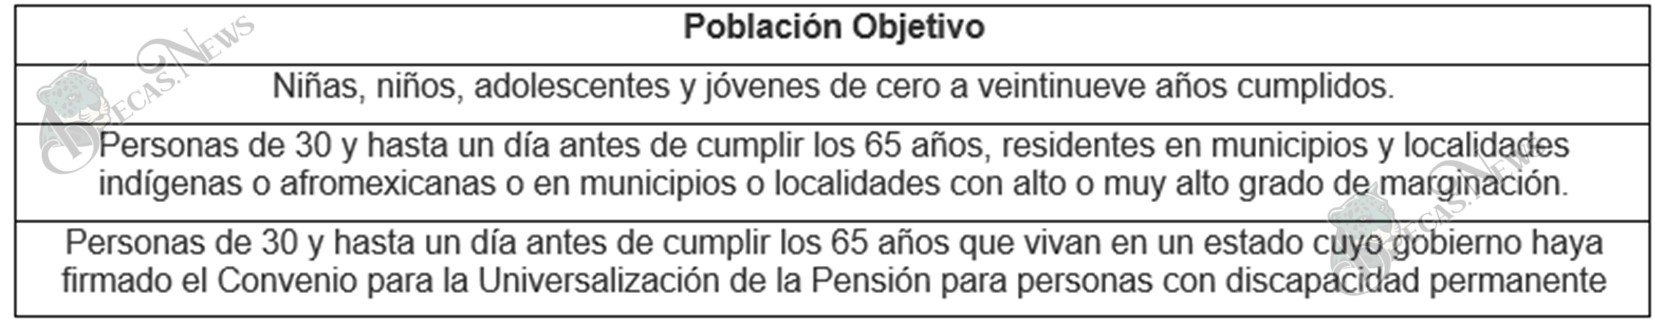 Imagen 1: Población objetivo del programa de la Pensión del Bienestar 